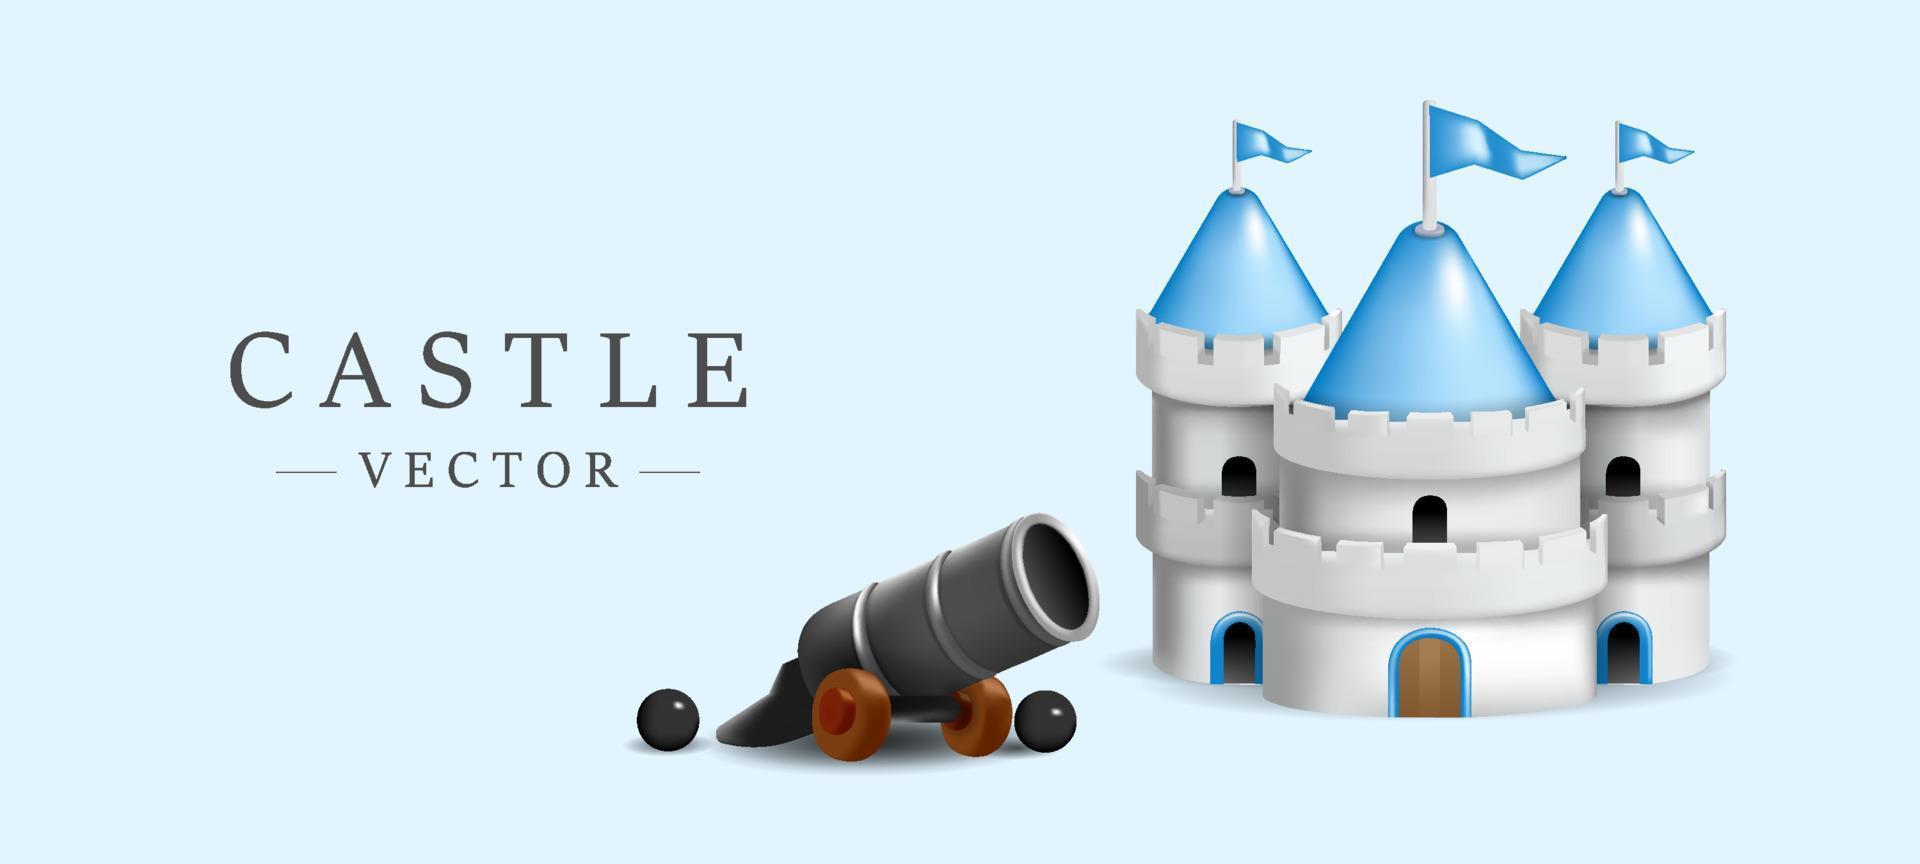 modèle 3d de château mignon avec illustration vectorielle de mini canon sur fond bleu ciel vecteur